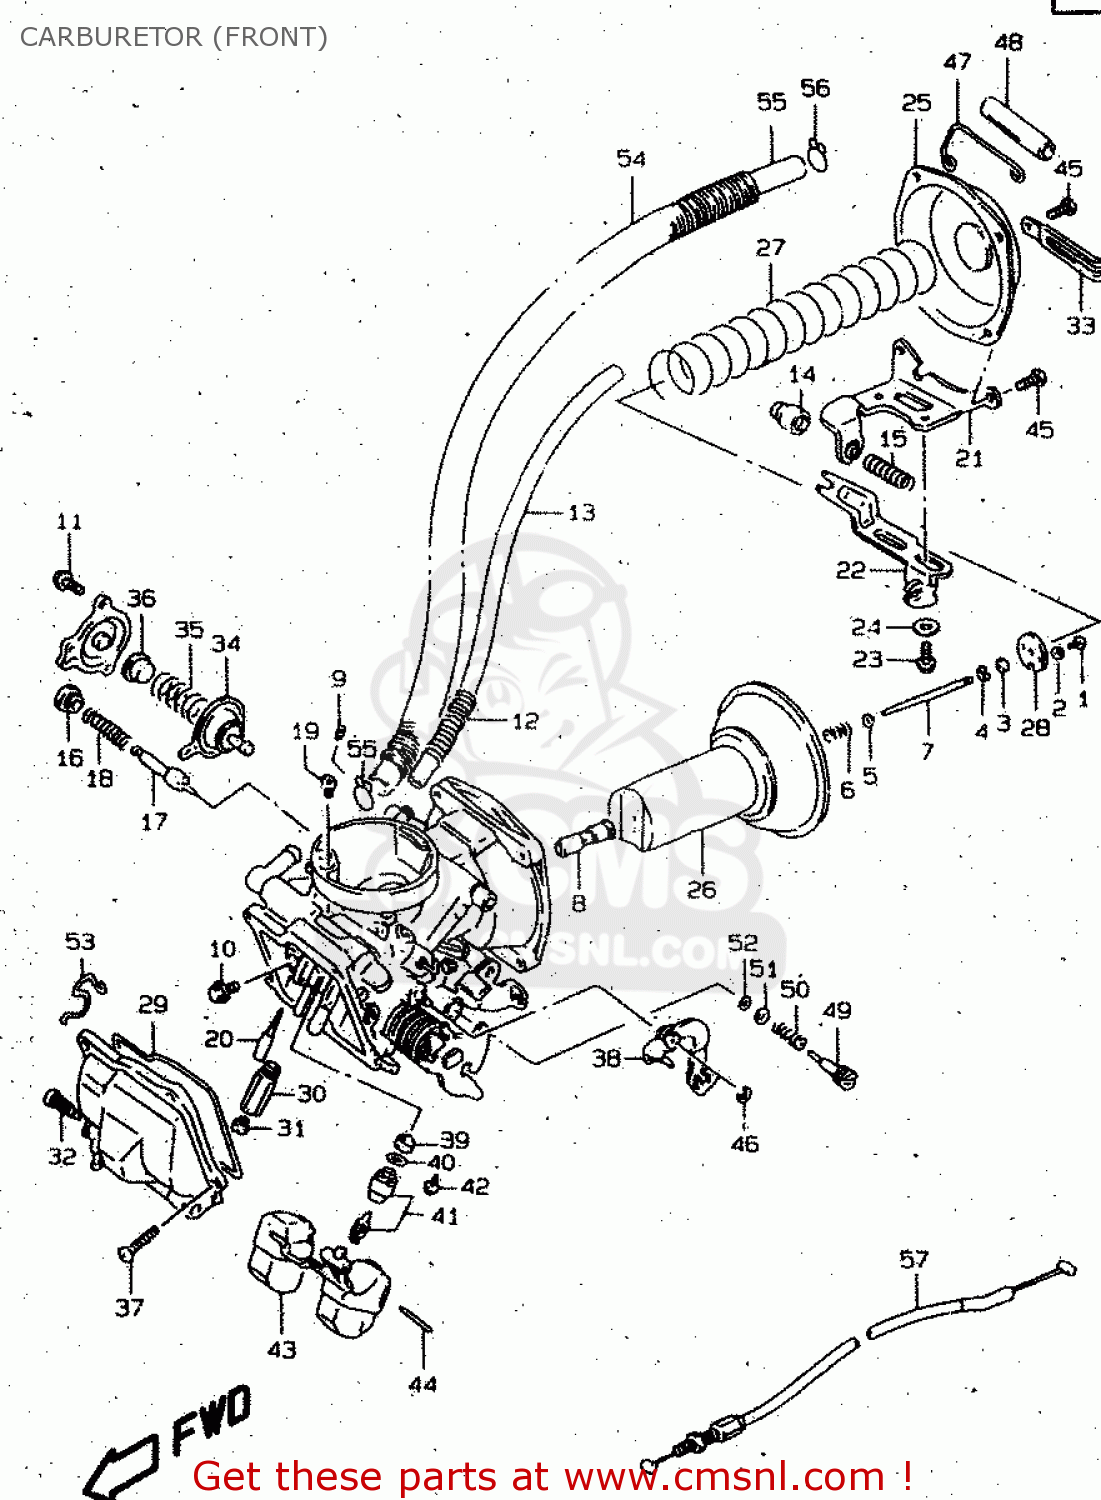 30 Suzuki Intruder 1400 Carburetor Diagram - Wiring Diagram Database